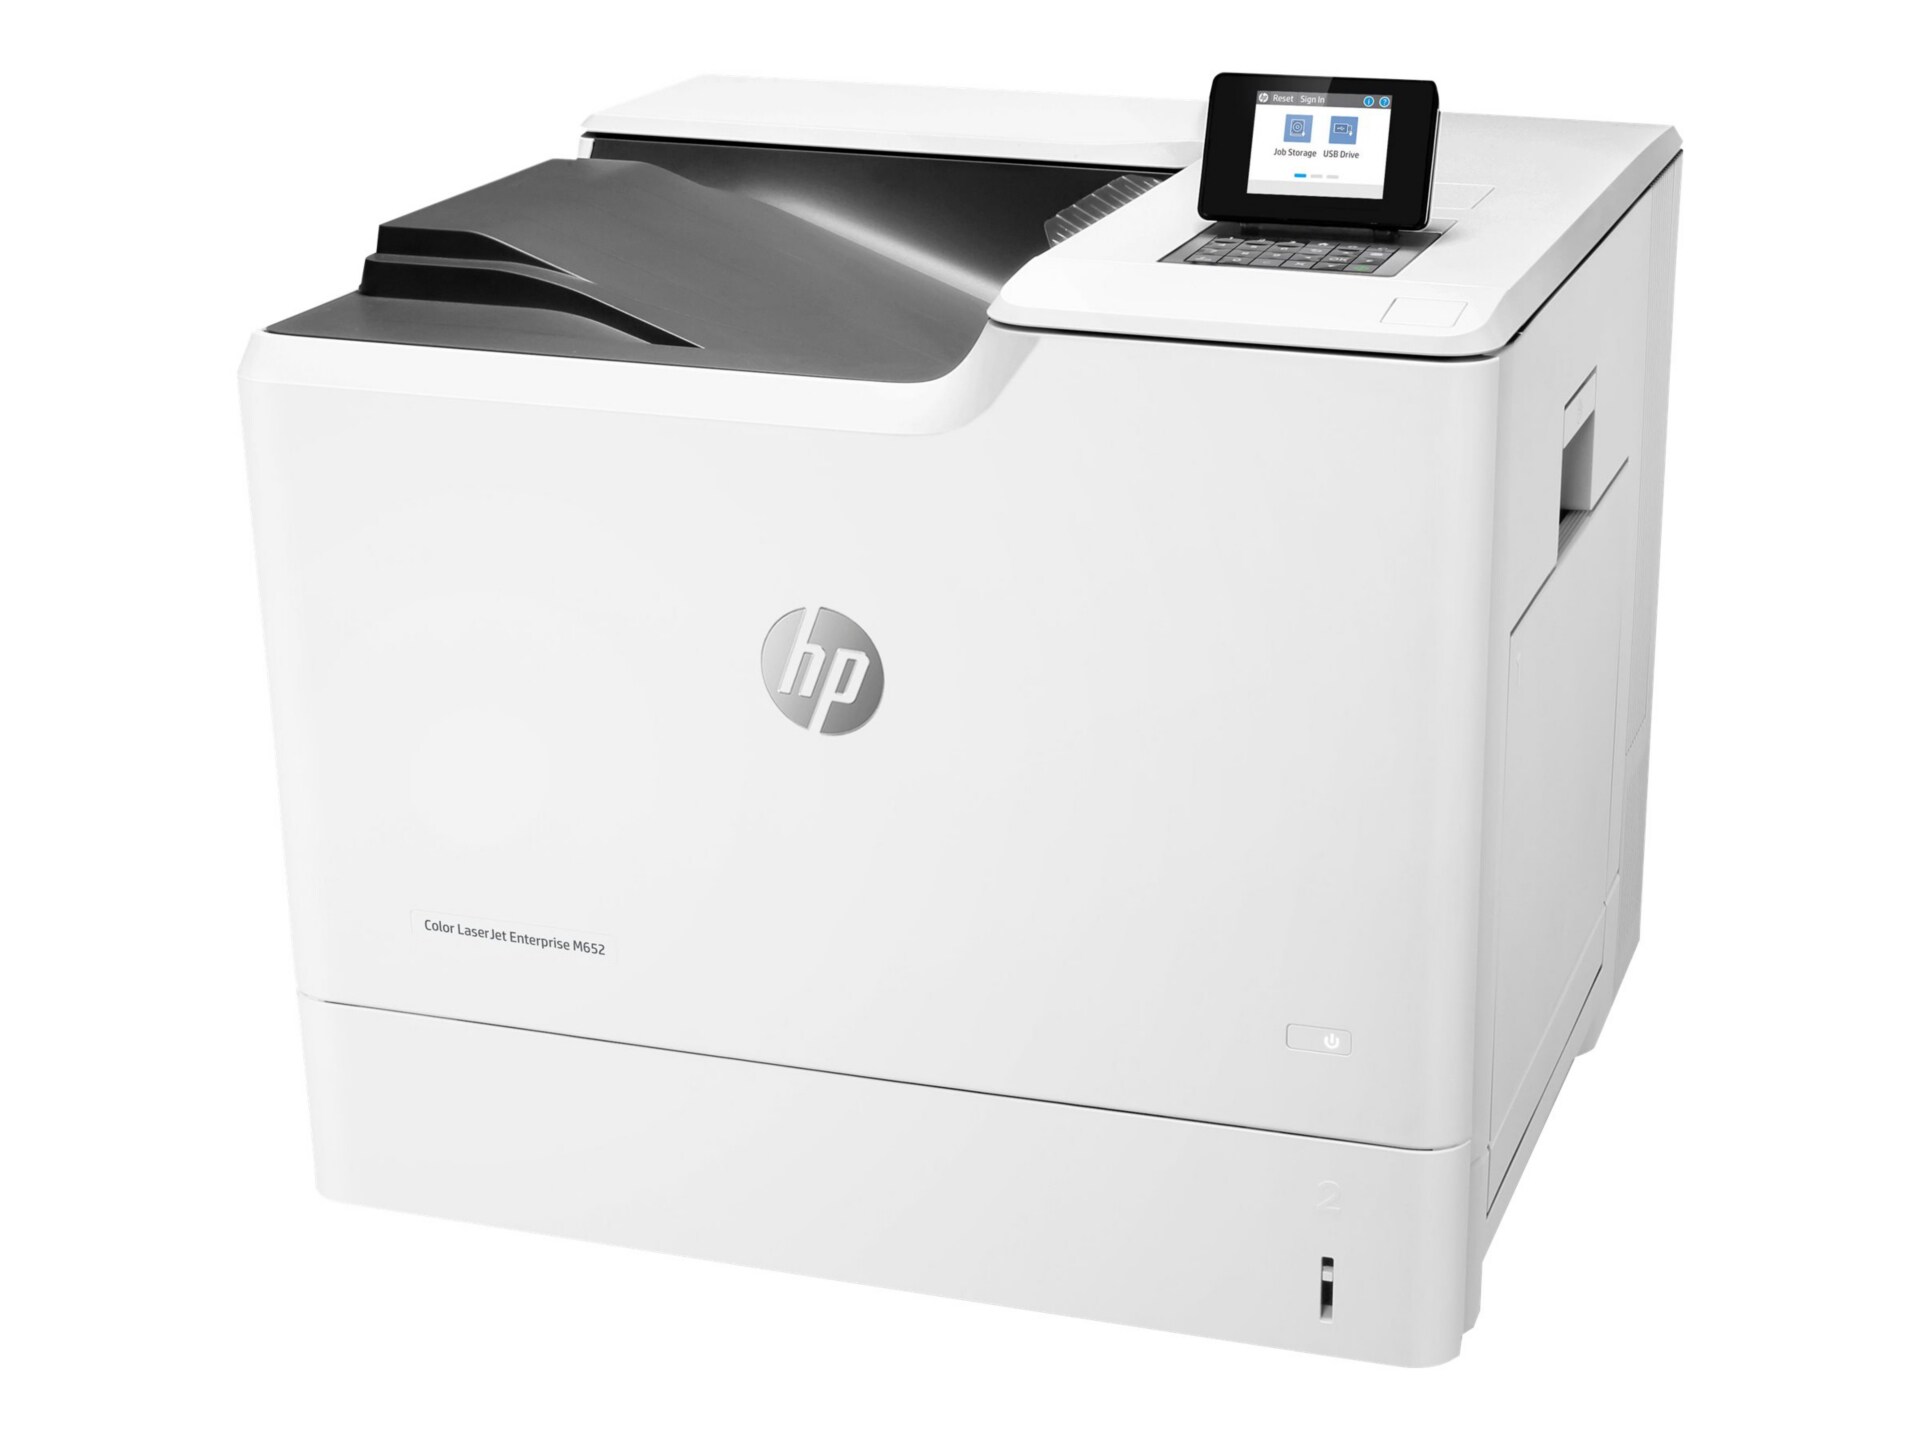 HP Color LaserJet Enterprise M652n Color Laser Printer